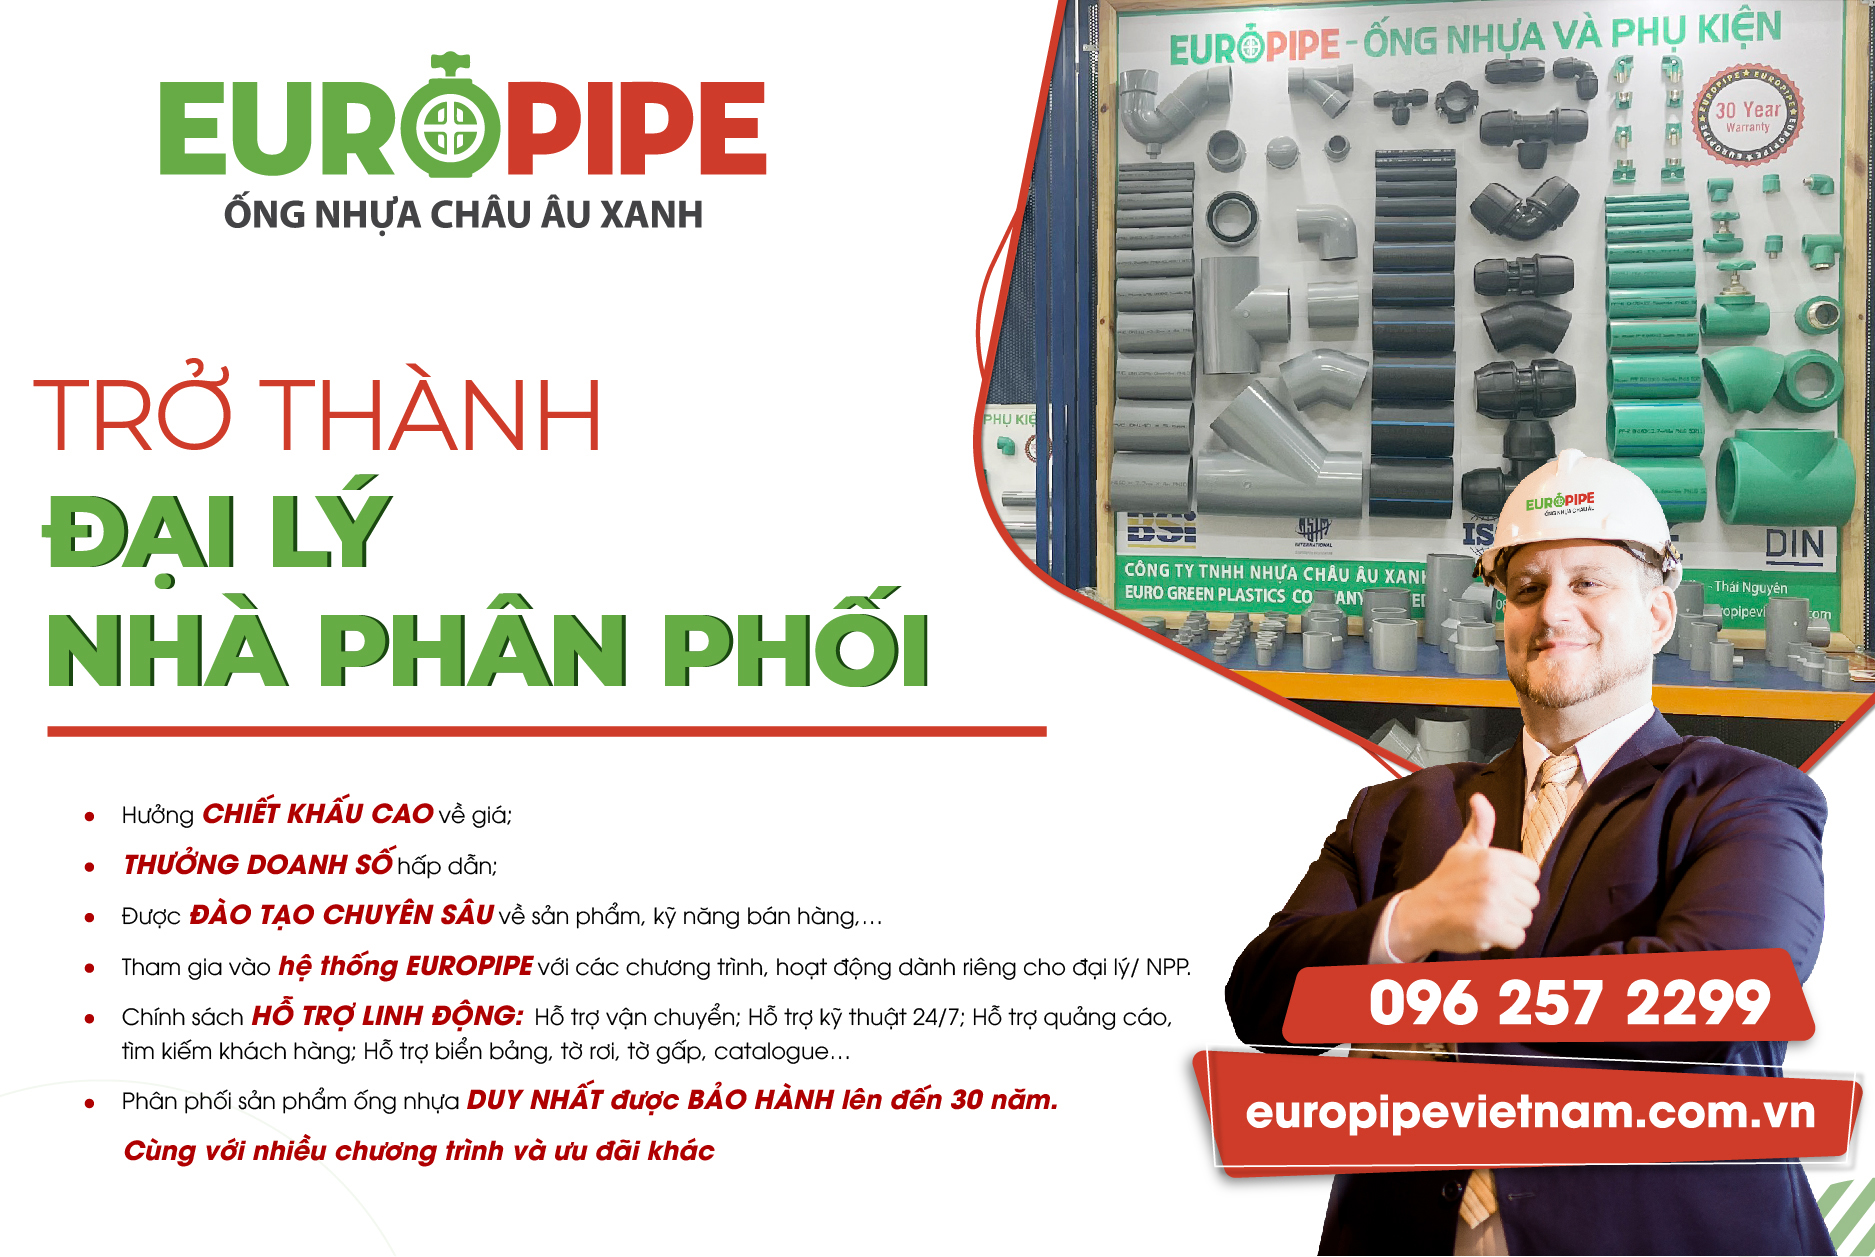 Địa chỉ mua ống nhựa Europipe uy tín và chính hãng